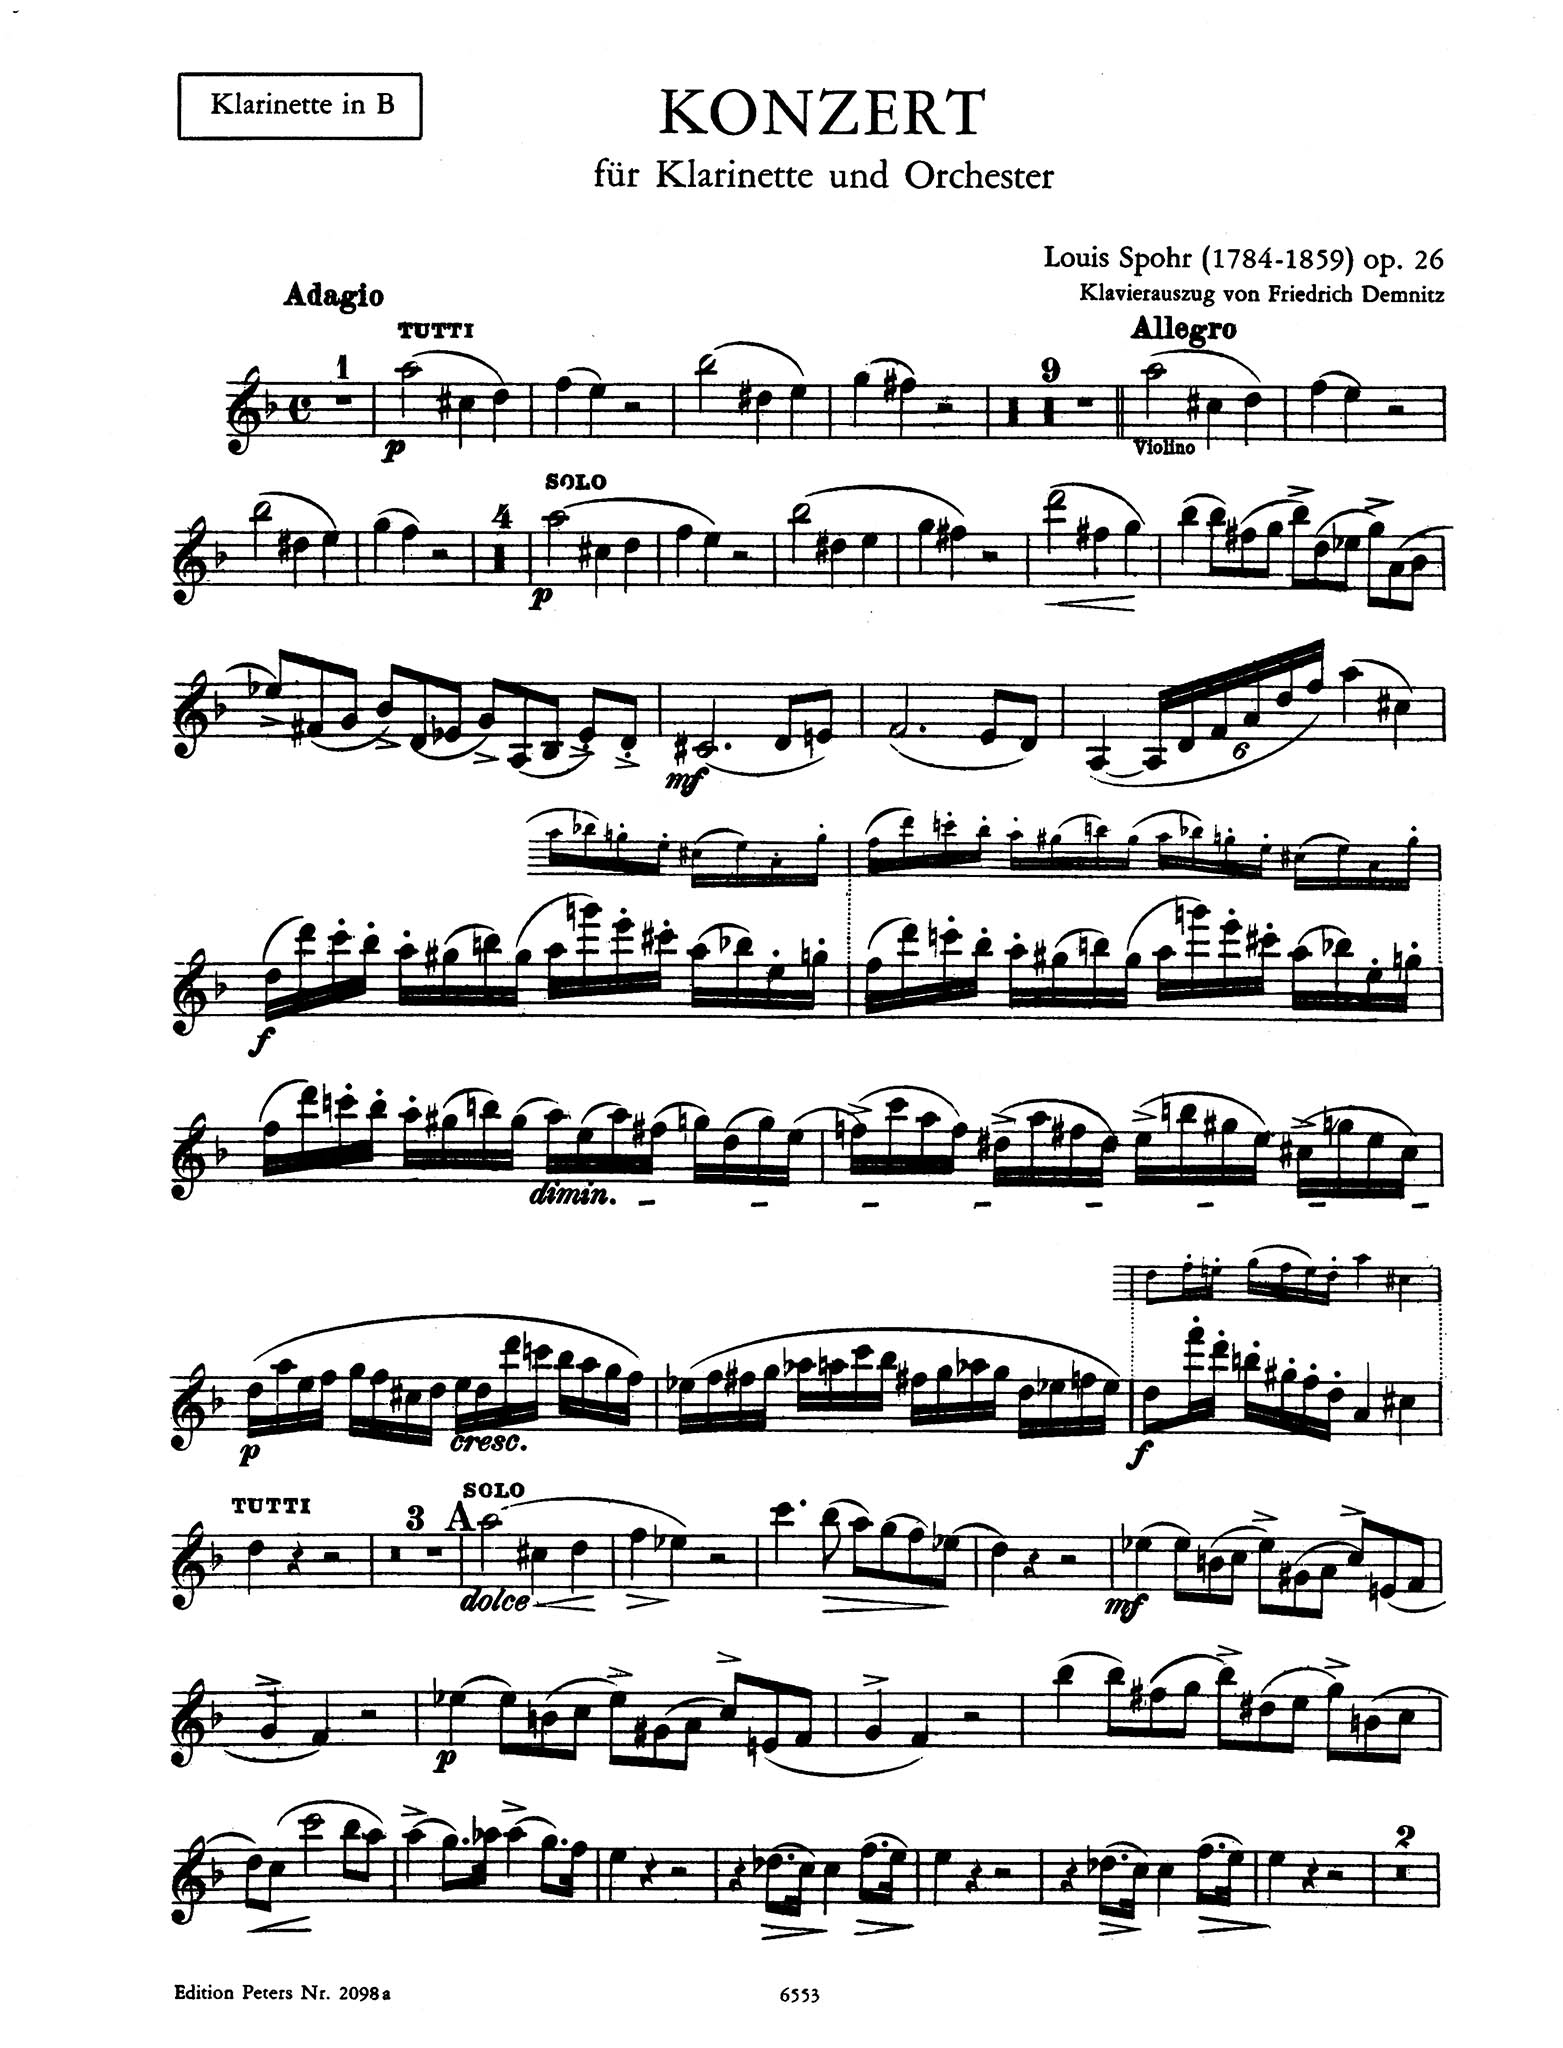 Clarinet Concerto No. 1 in C Minor, Op. 26 Clarinet part